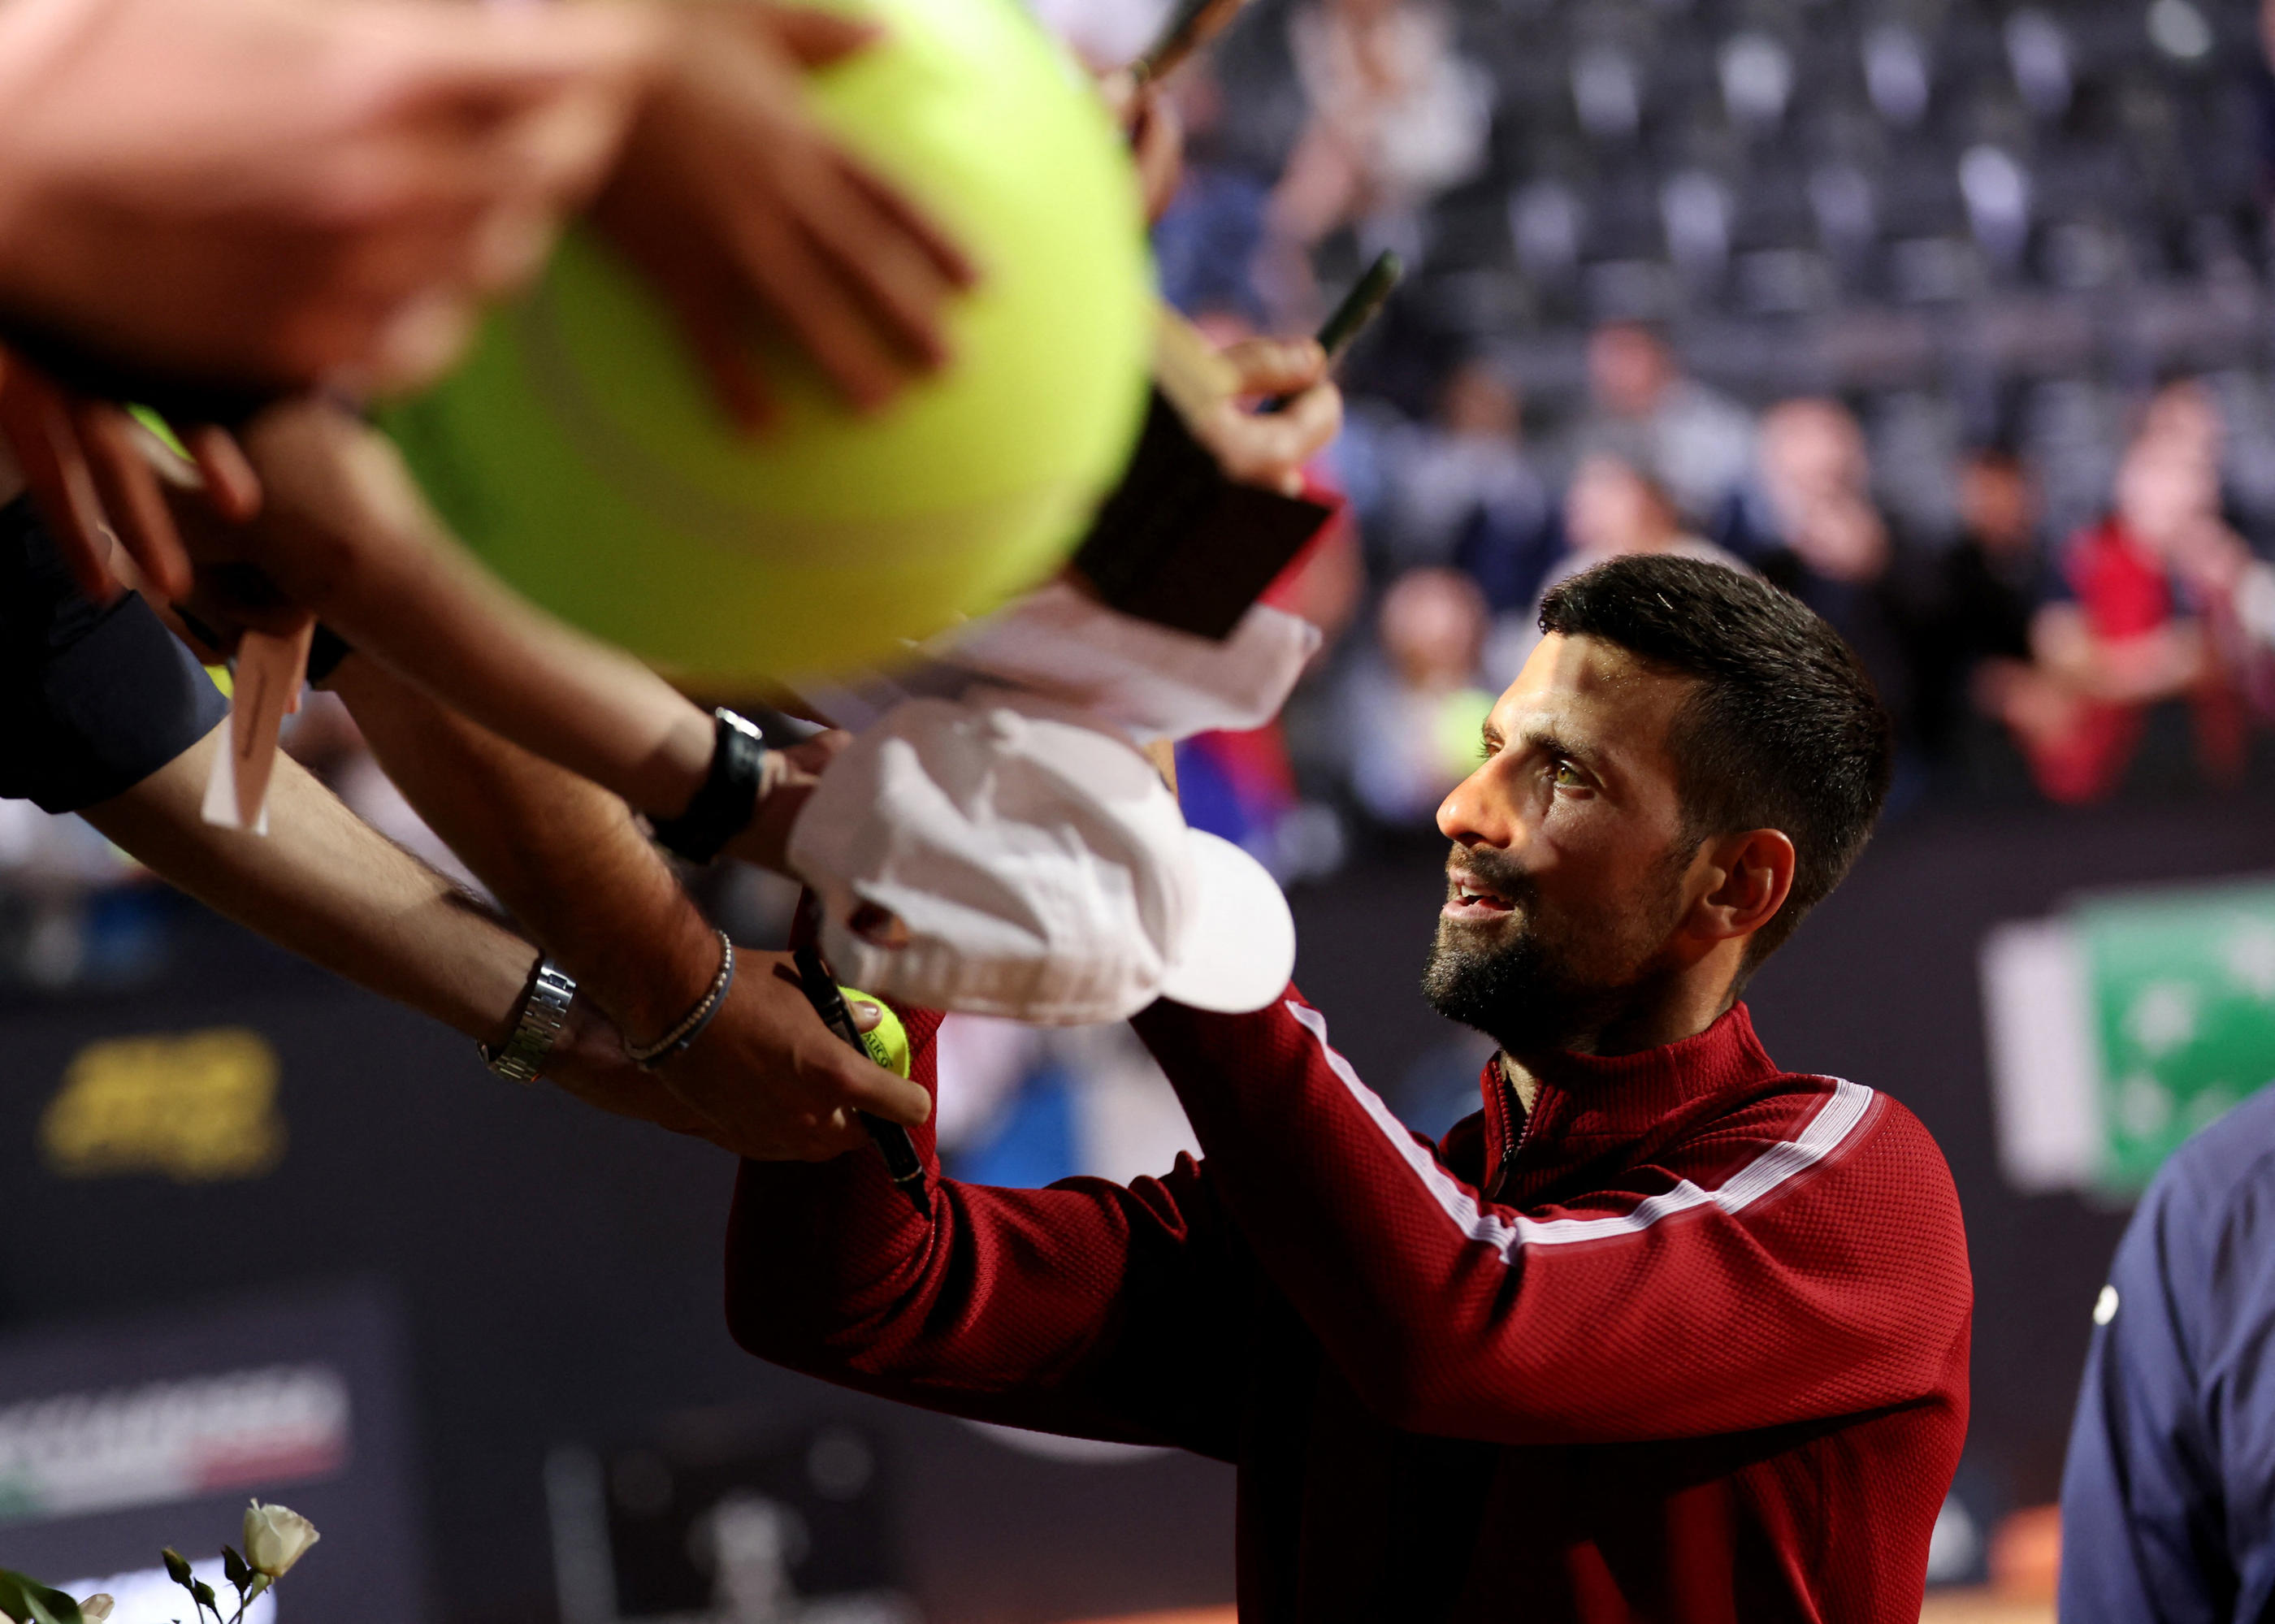 Quelques secondes après avoir signé des autographes, Novak Djokovic a reçu une gourde sur la tête (REUTERS/Claudia Greco)